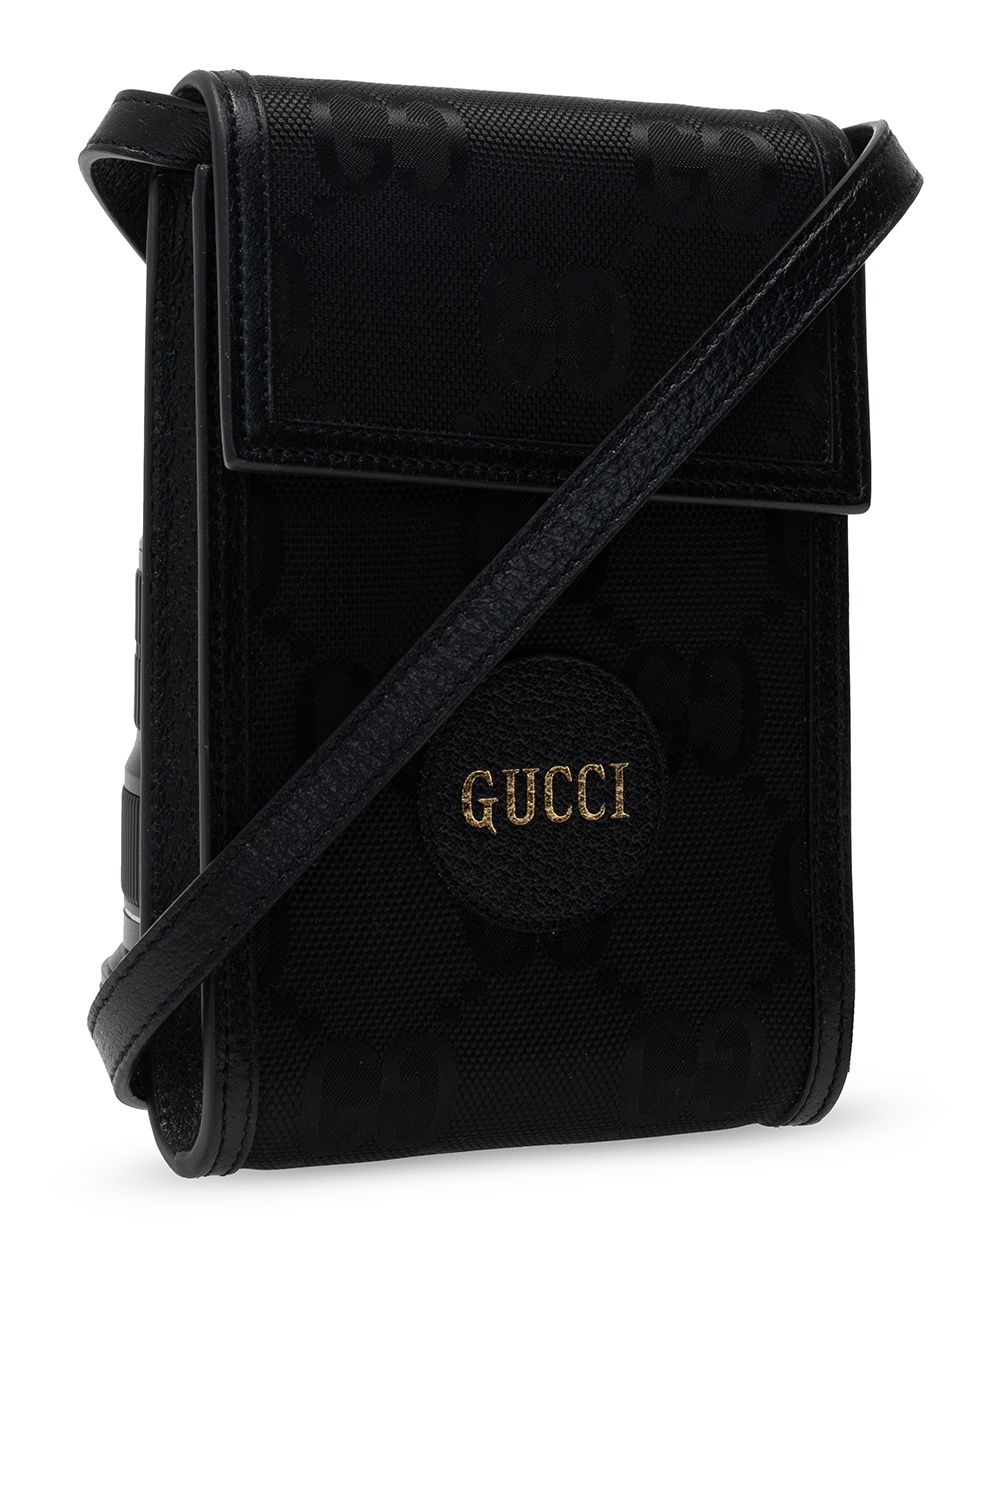 Gucci Bolso bandolera Gucci Suprême GG en lona Monogram revestida negra y cuero negro